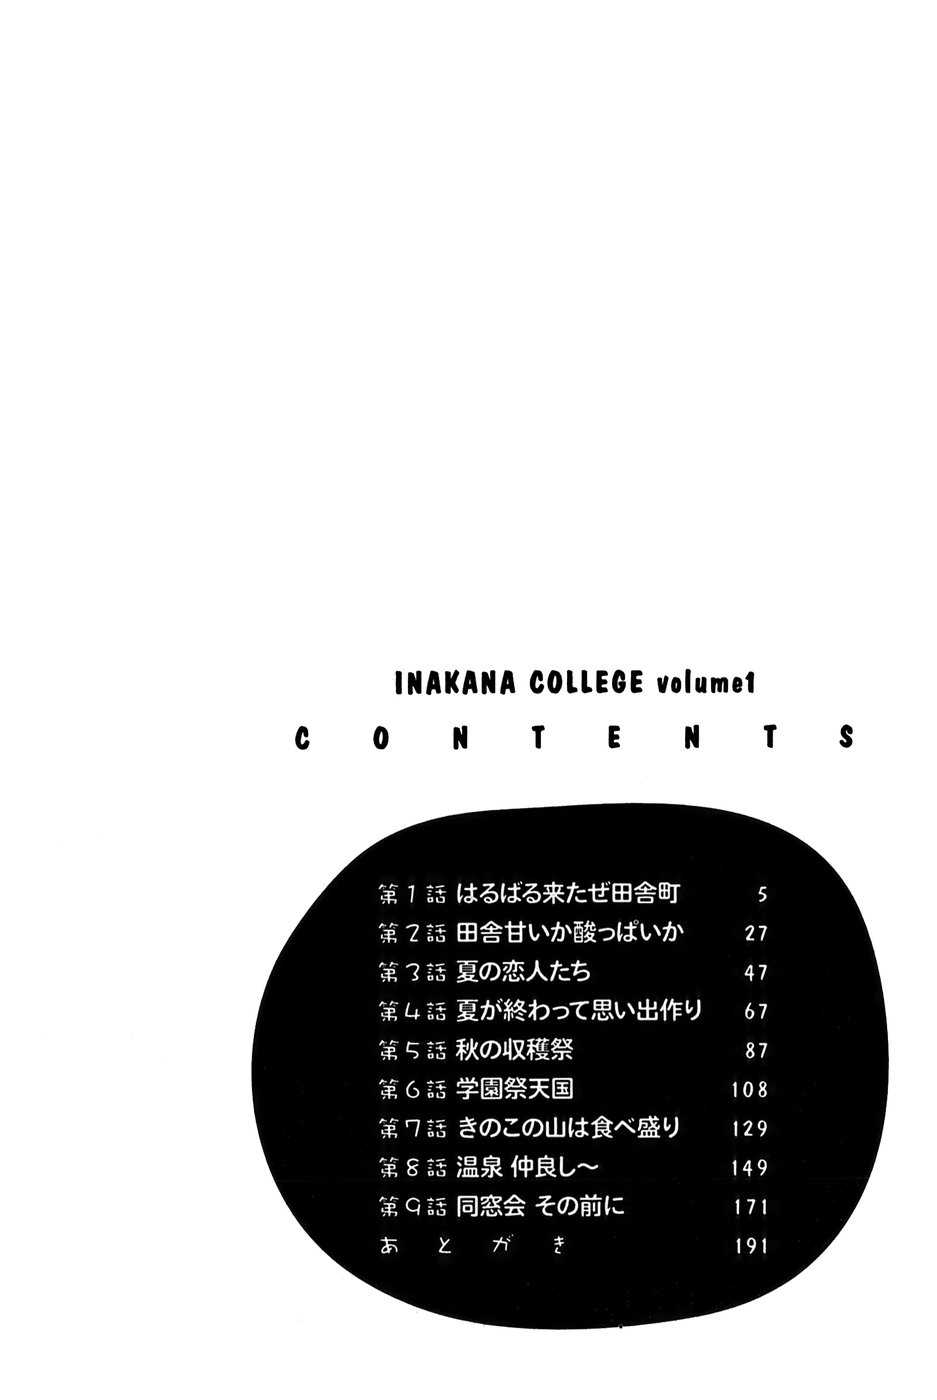 [Hotta kei]College Inakana 1 [法田恵]イナカナかれっじ 1[J]